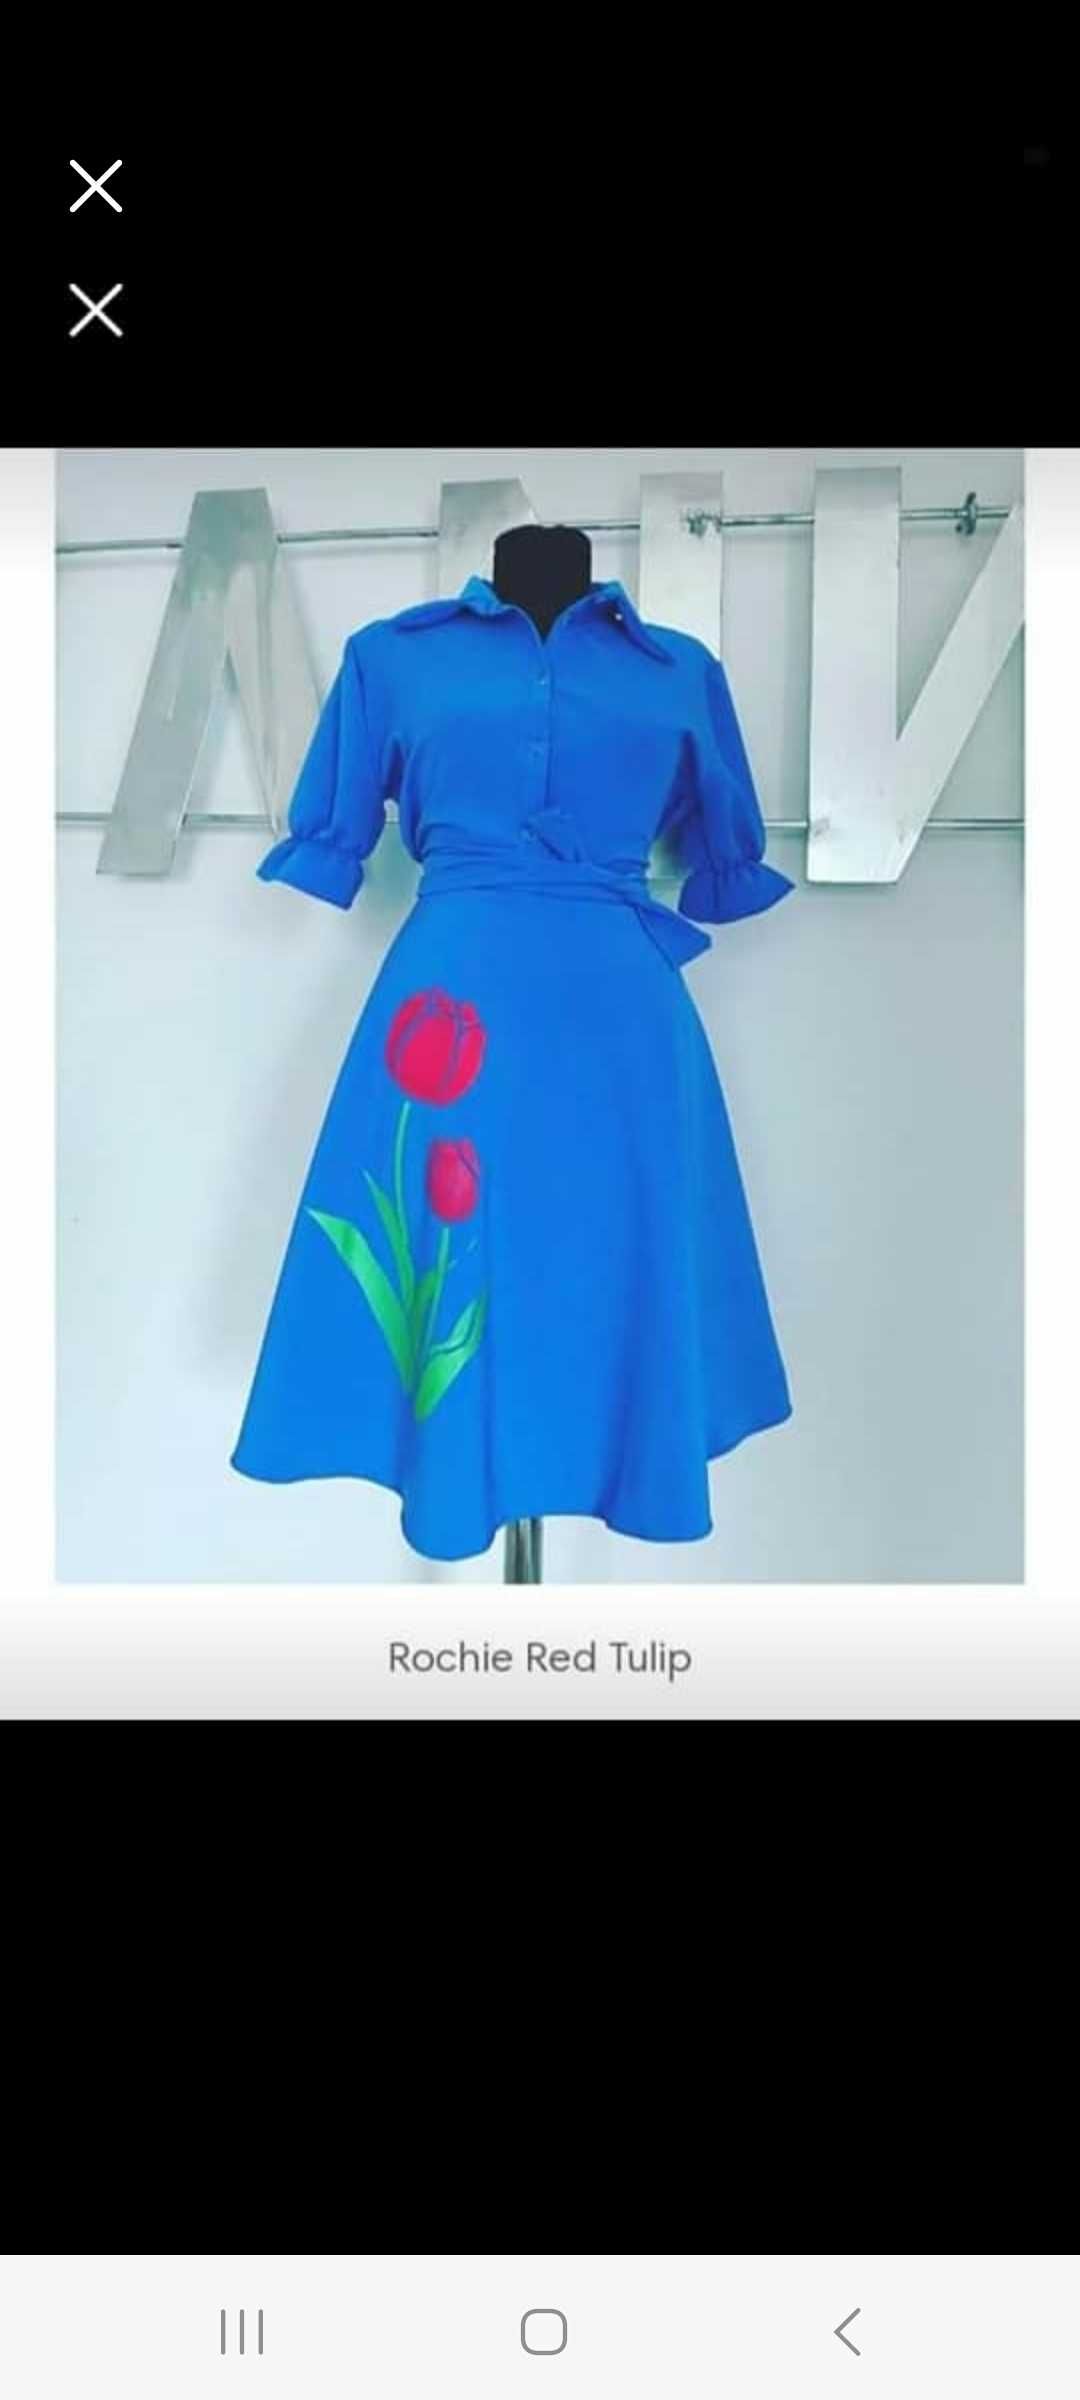 Rochie red tulip